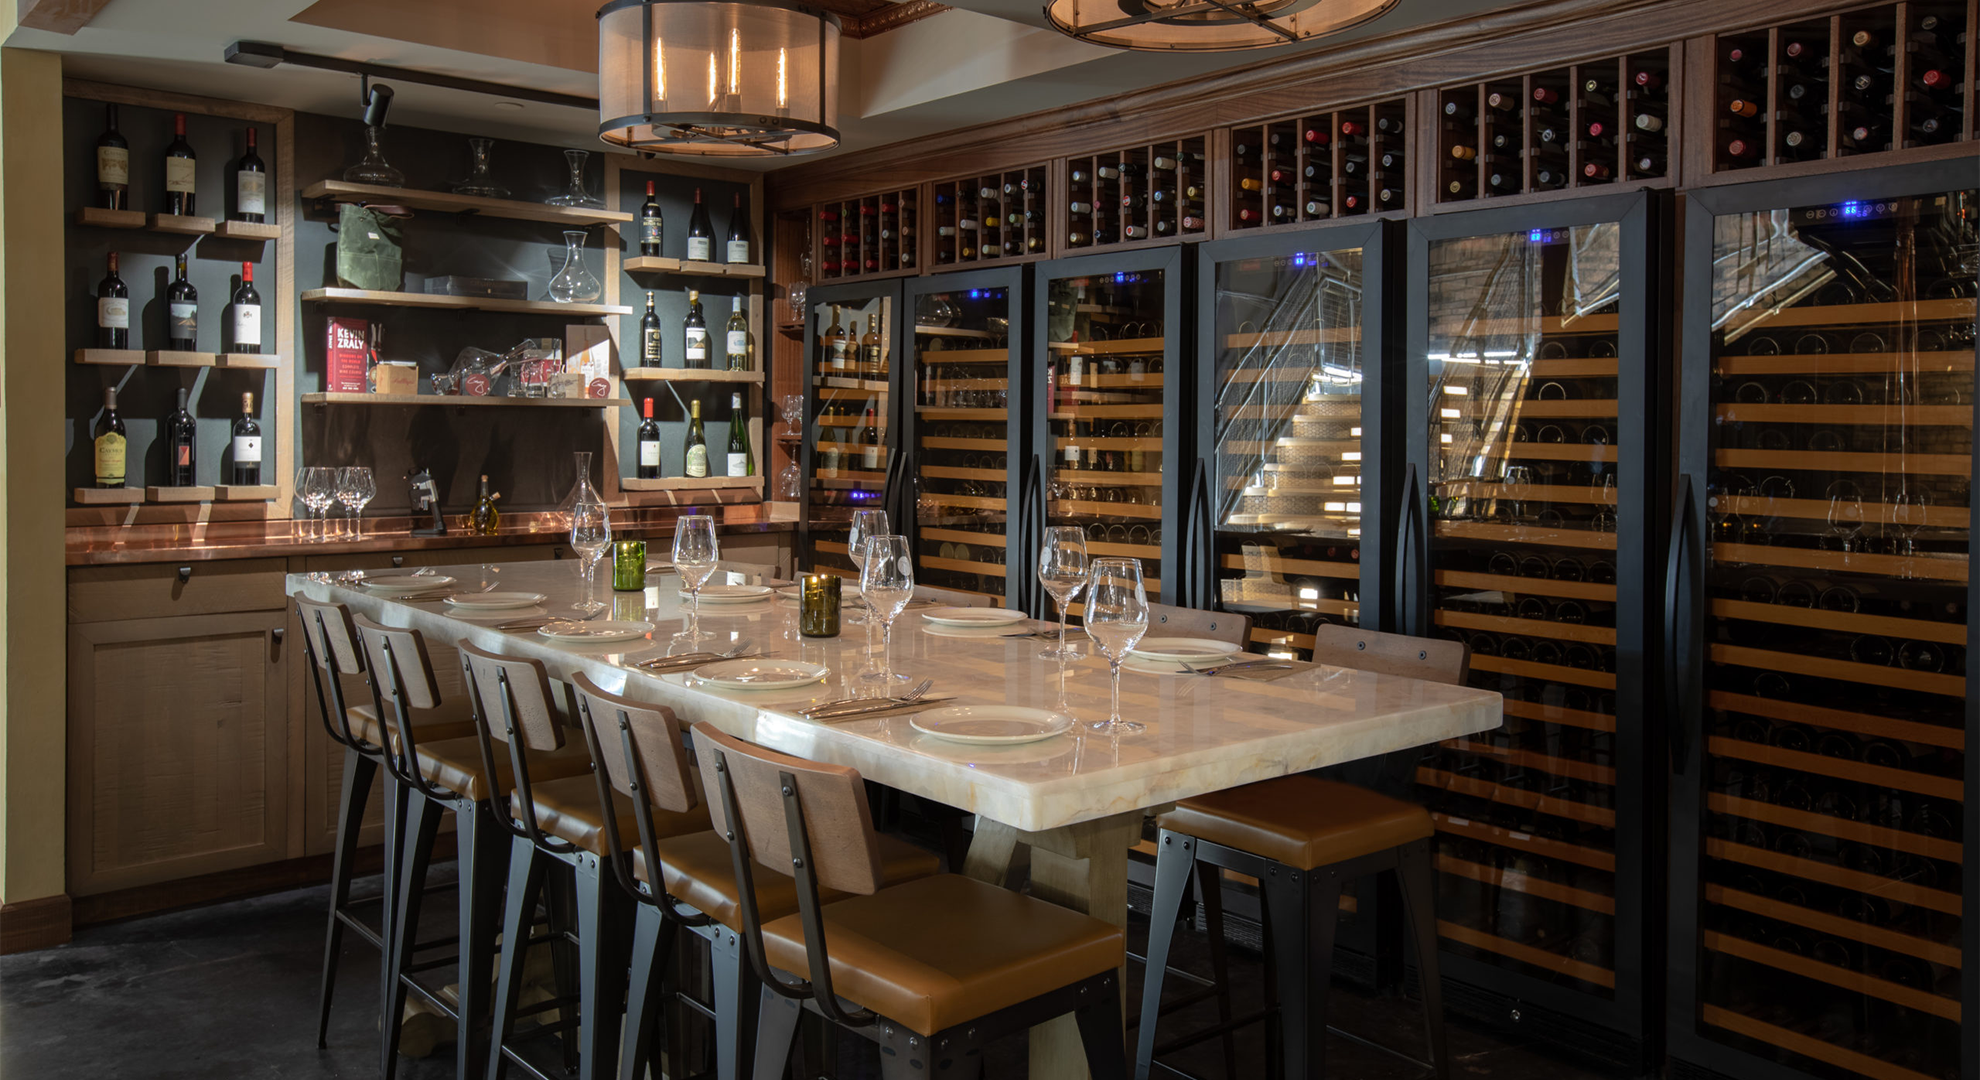 Elegante tafelschikking met wijnflessen, wijnkoelingen en een wijnkelder op de achtergrond.